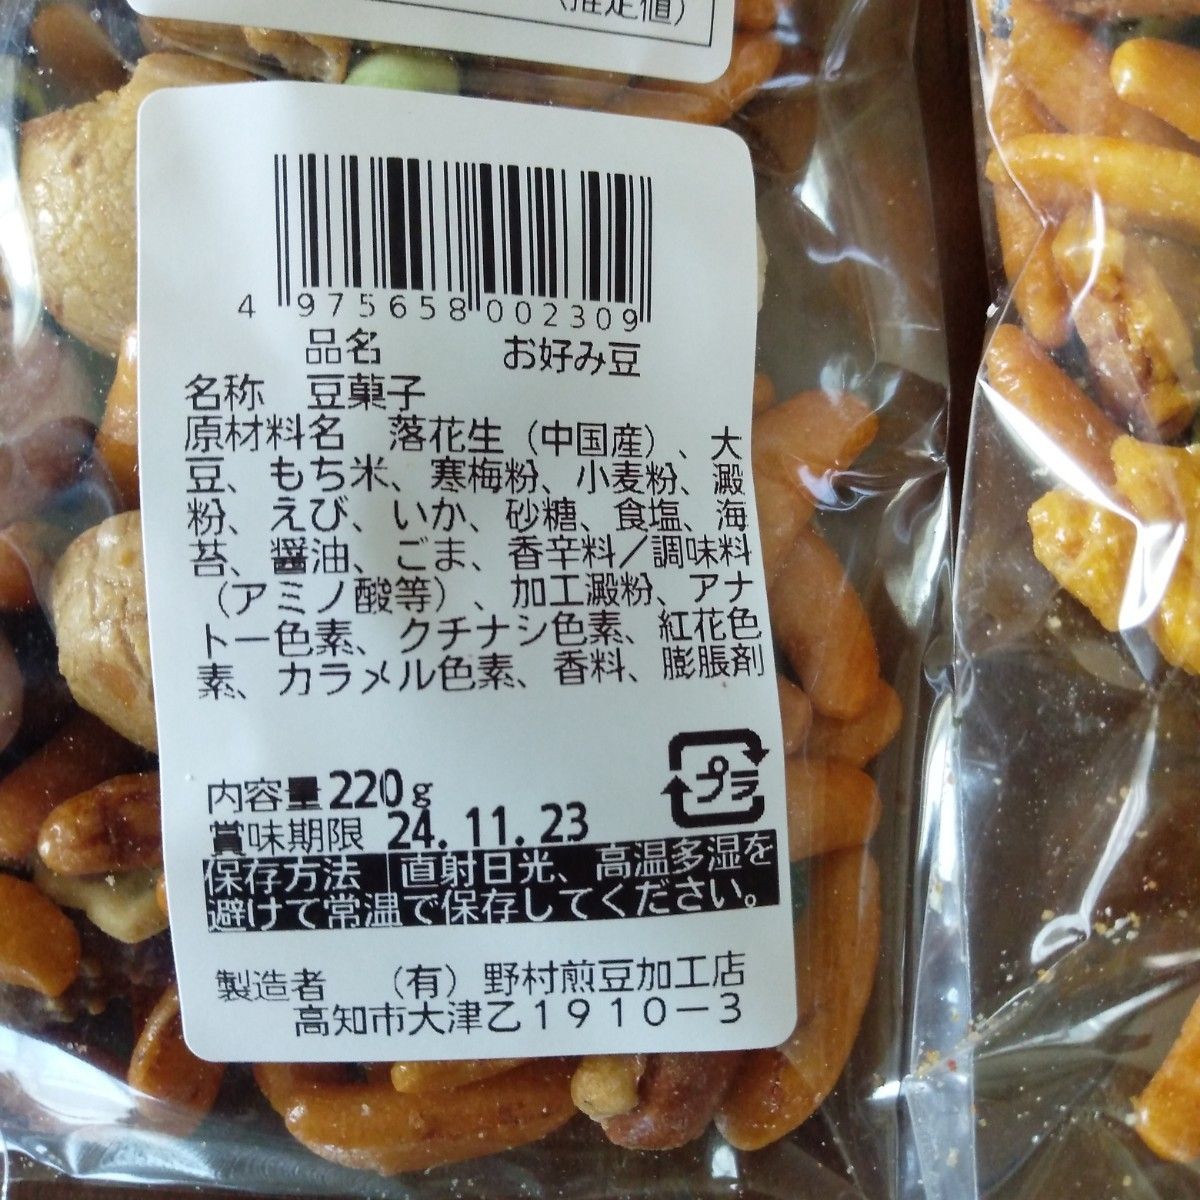 お好み豆220g 3袋 賞味期限24.11.23 野村煎豆加工店 柿の種、いろんな豆、セサミ、コーヒーピー、おかき等のミックス特価